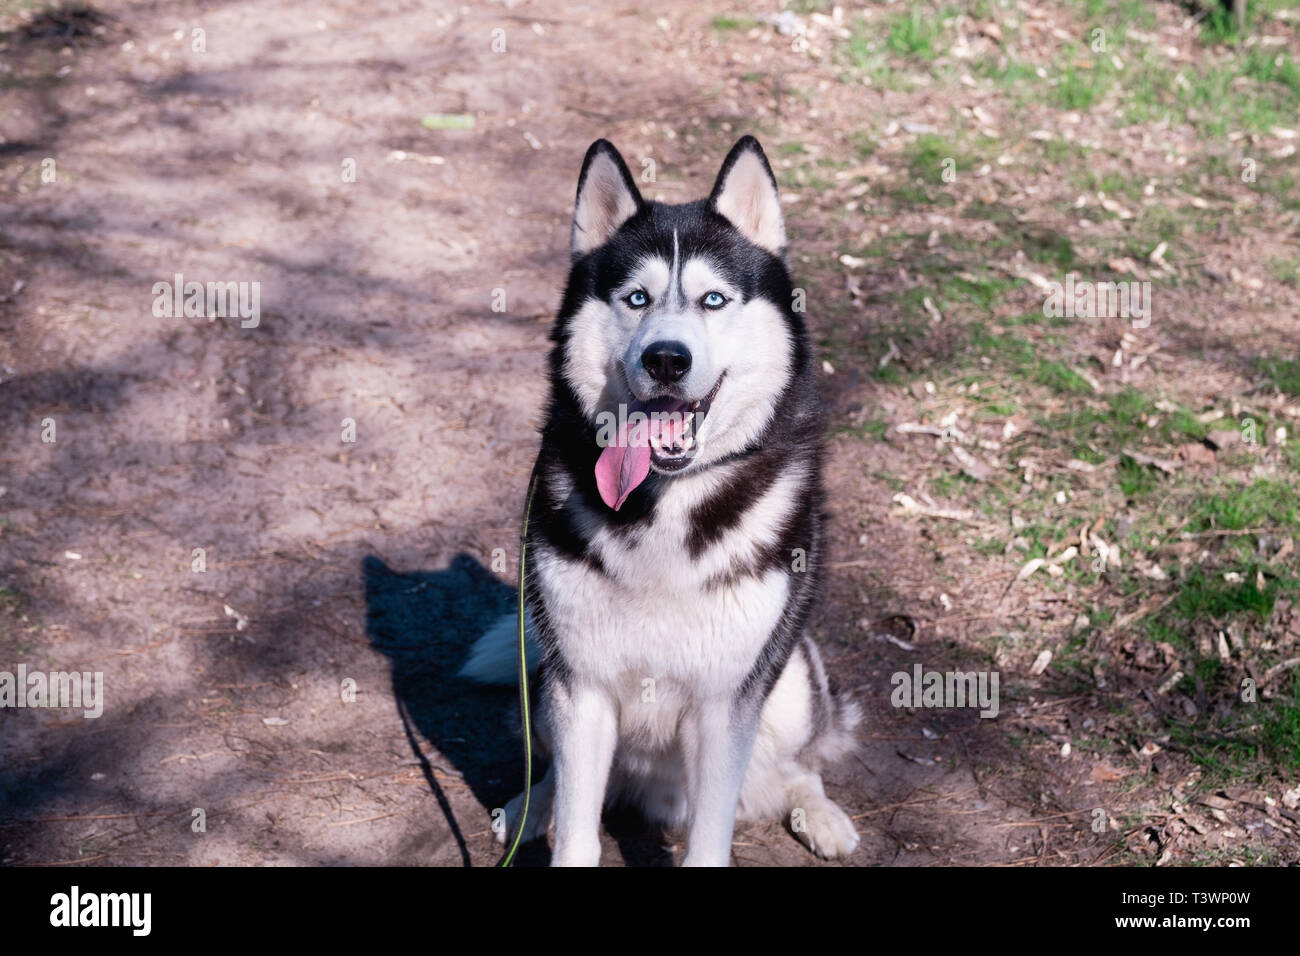 Un drôle de chien husky rit et montre sa langue, un beau chien, un ami satisfait Malamute est assis sur le sol, la forêt en arrière-plan Banque D'Images